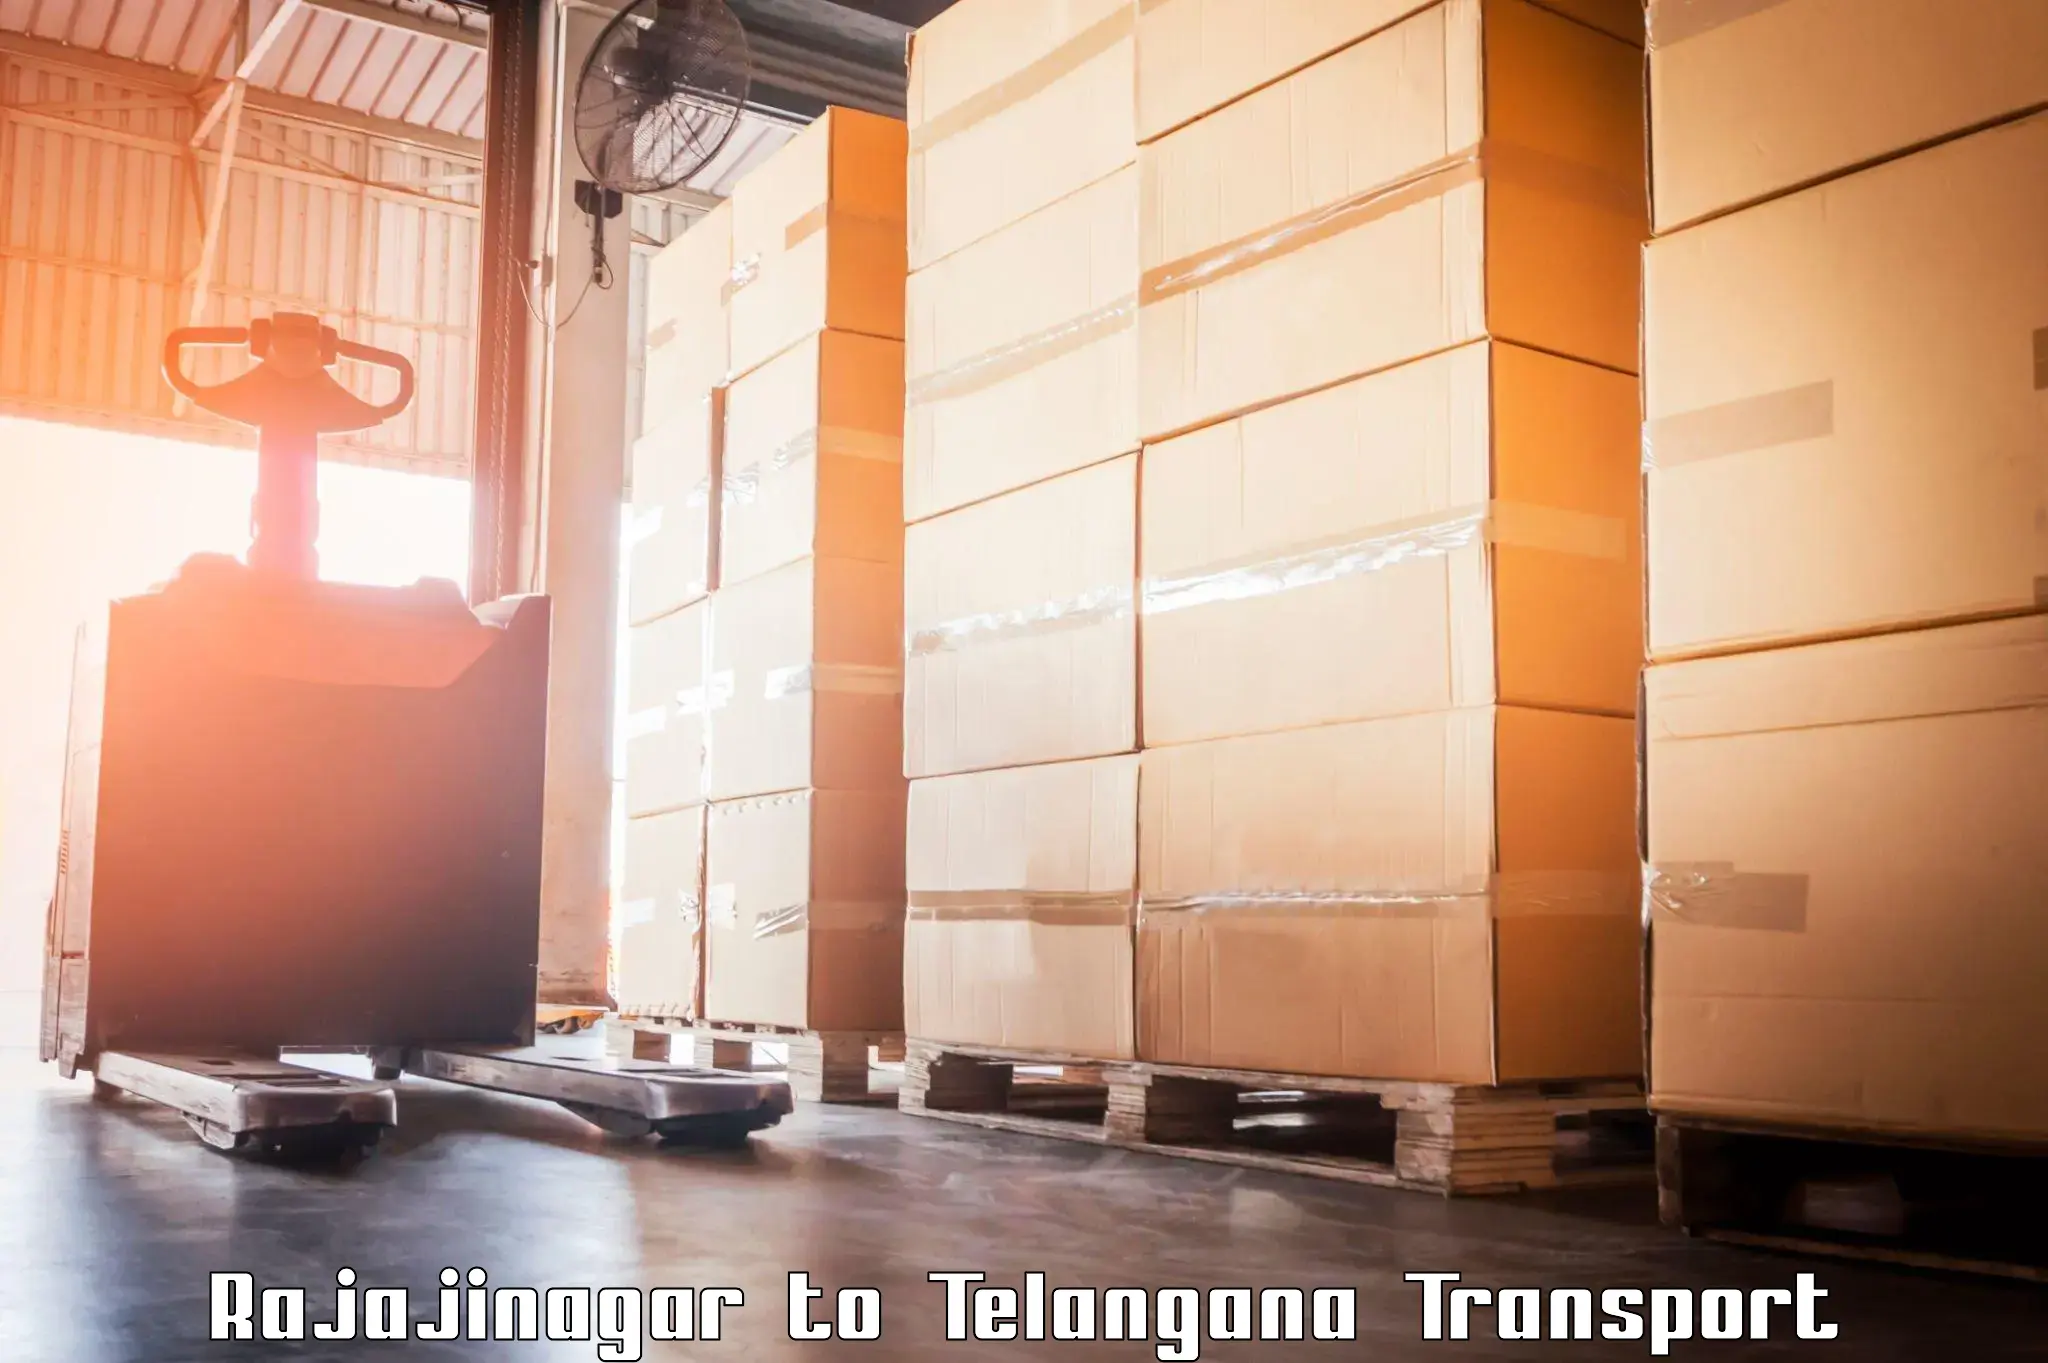 Logistics transportation services Rajajinagar to Shadnagar